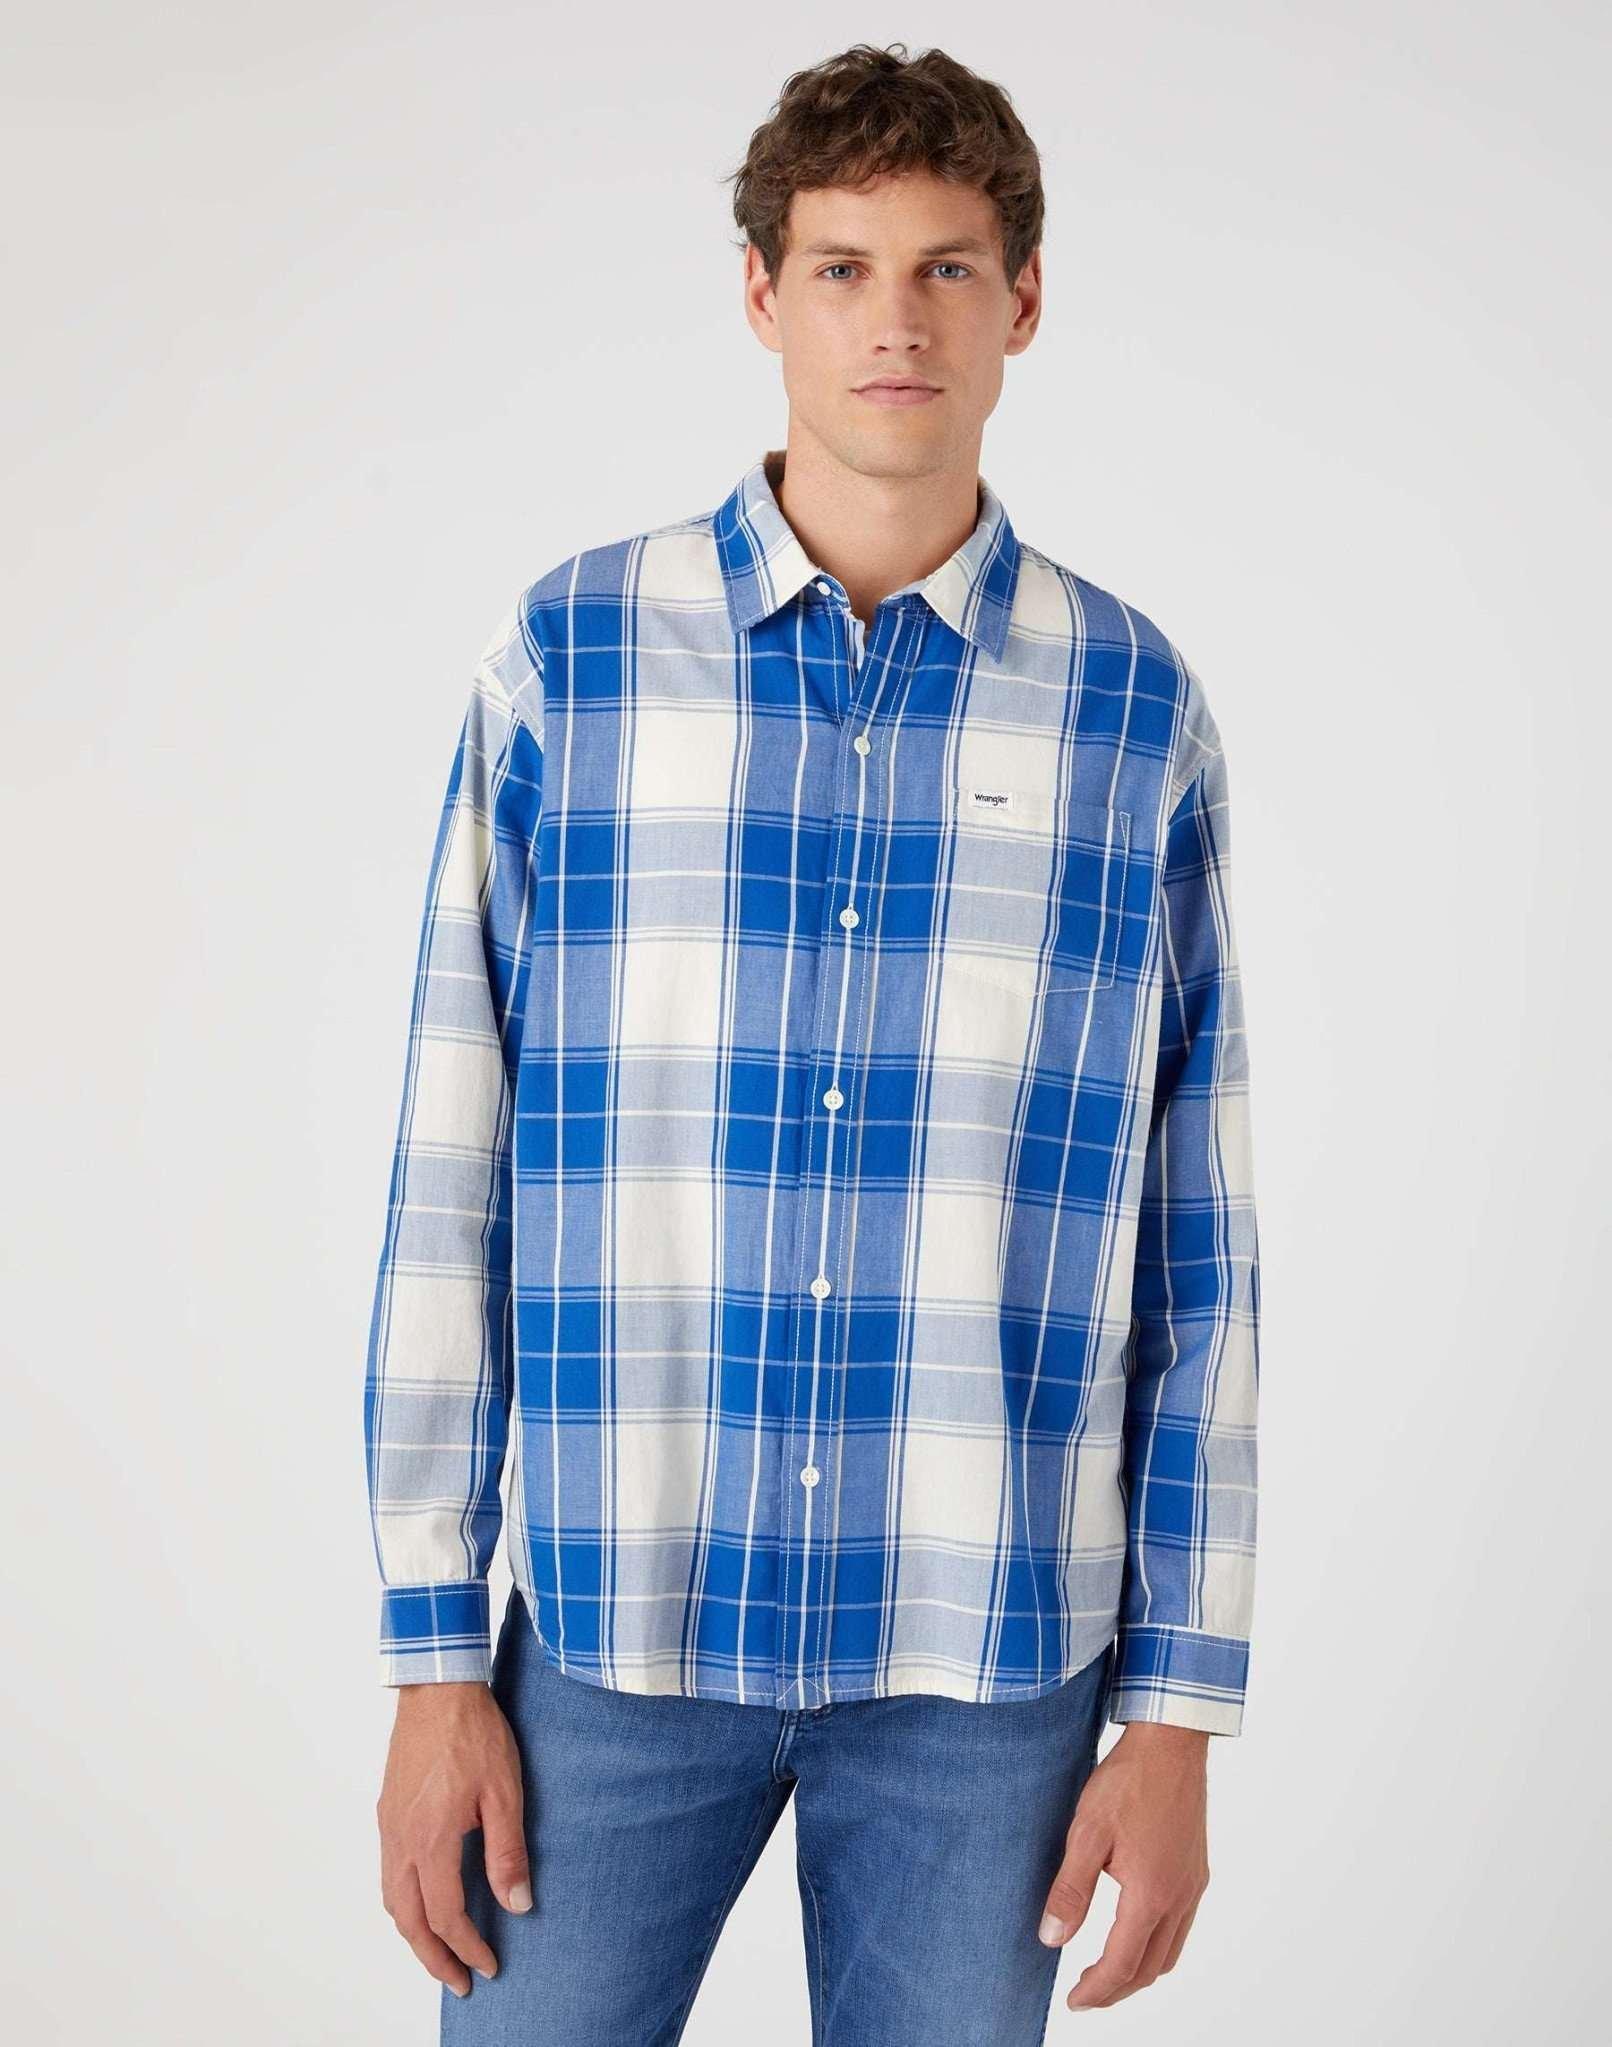 Hemden One Pocket Shirt Herren Blau M von Wrangler